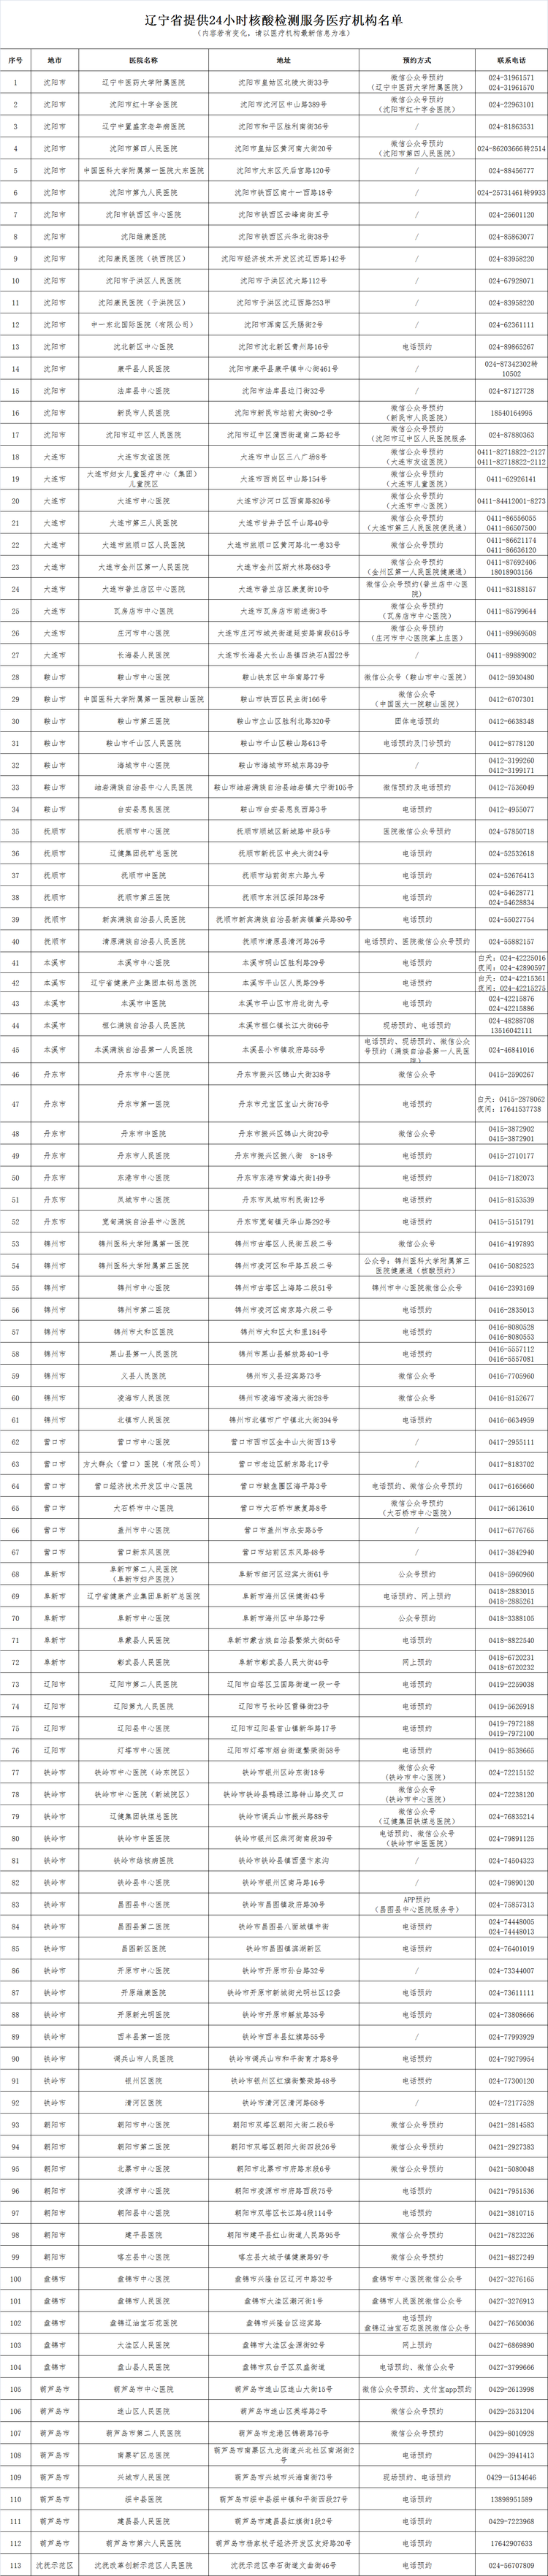 辽宁省提供24小时核酸检测服务医疗机构名单_fororder_098d35ae7b604ff3e5e9bfd57b3e1e6